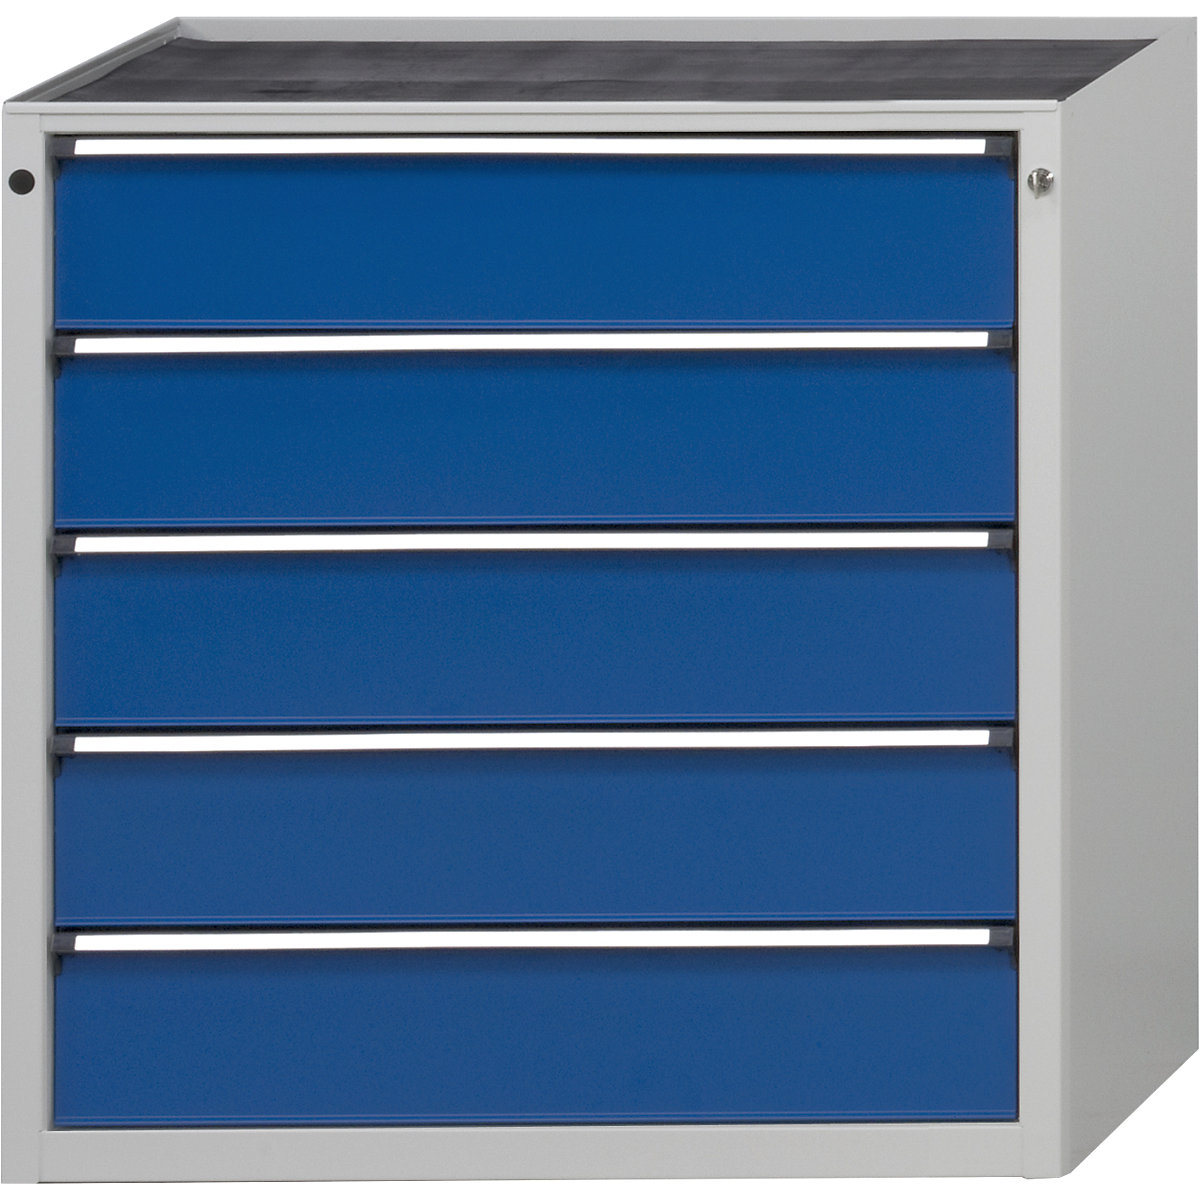 ANKE – Predalnik, ŠxG 910 x 675 mm, nosilnost predalov 200 kg, 5 predalov, višina 980 mm, sprednji del encijan modra